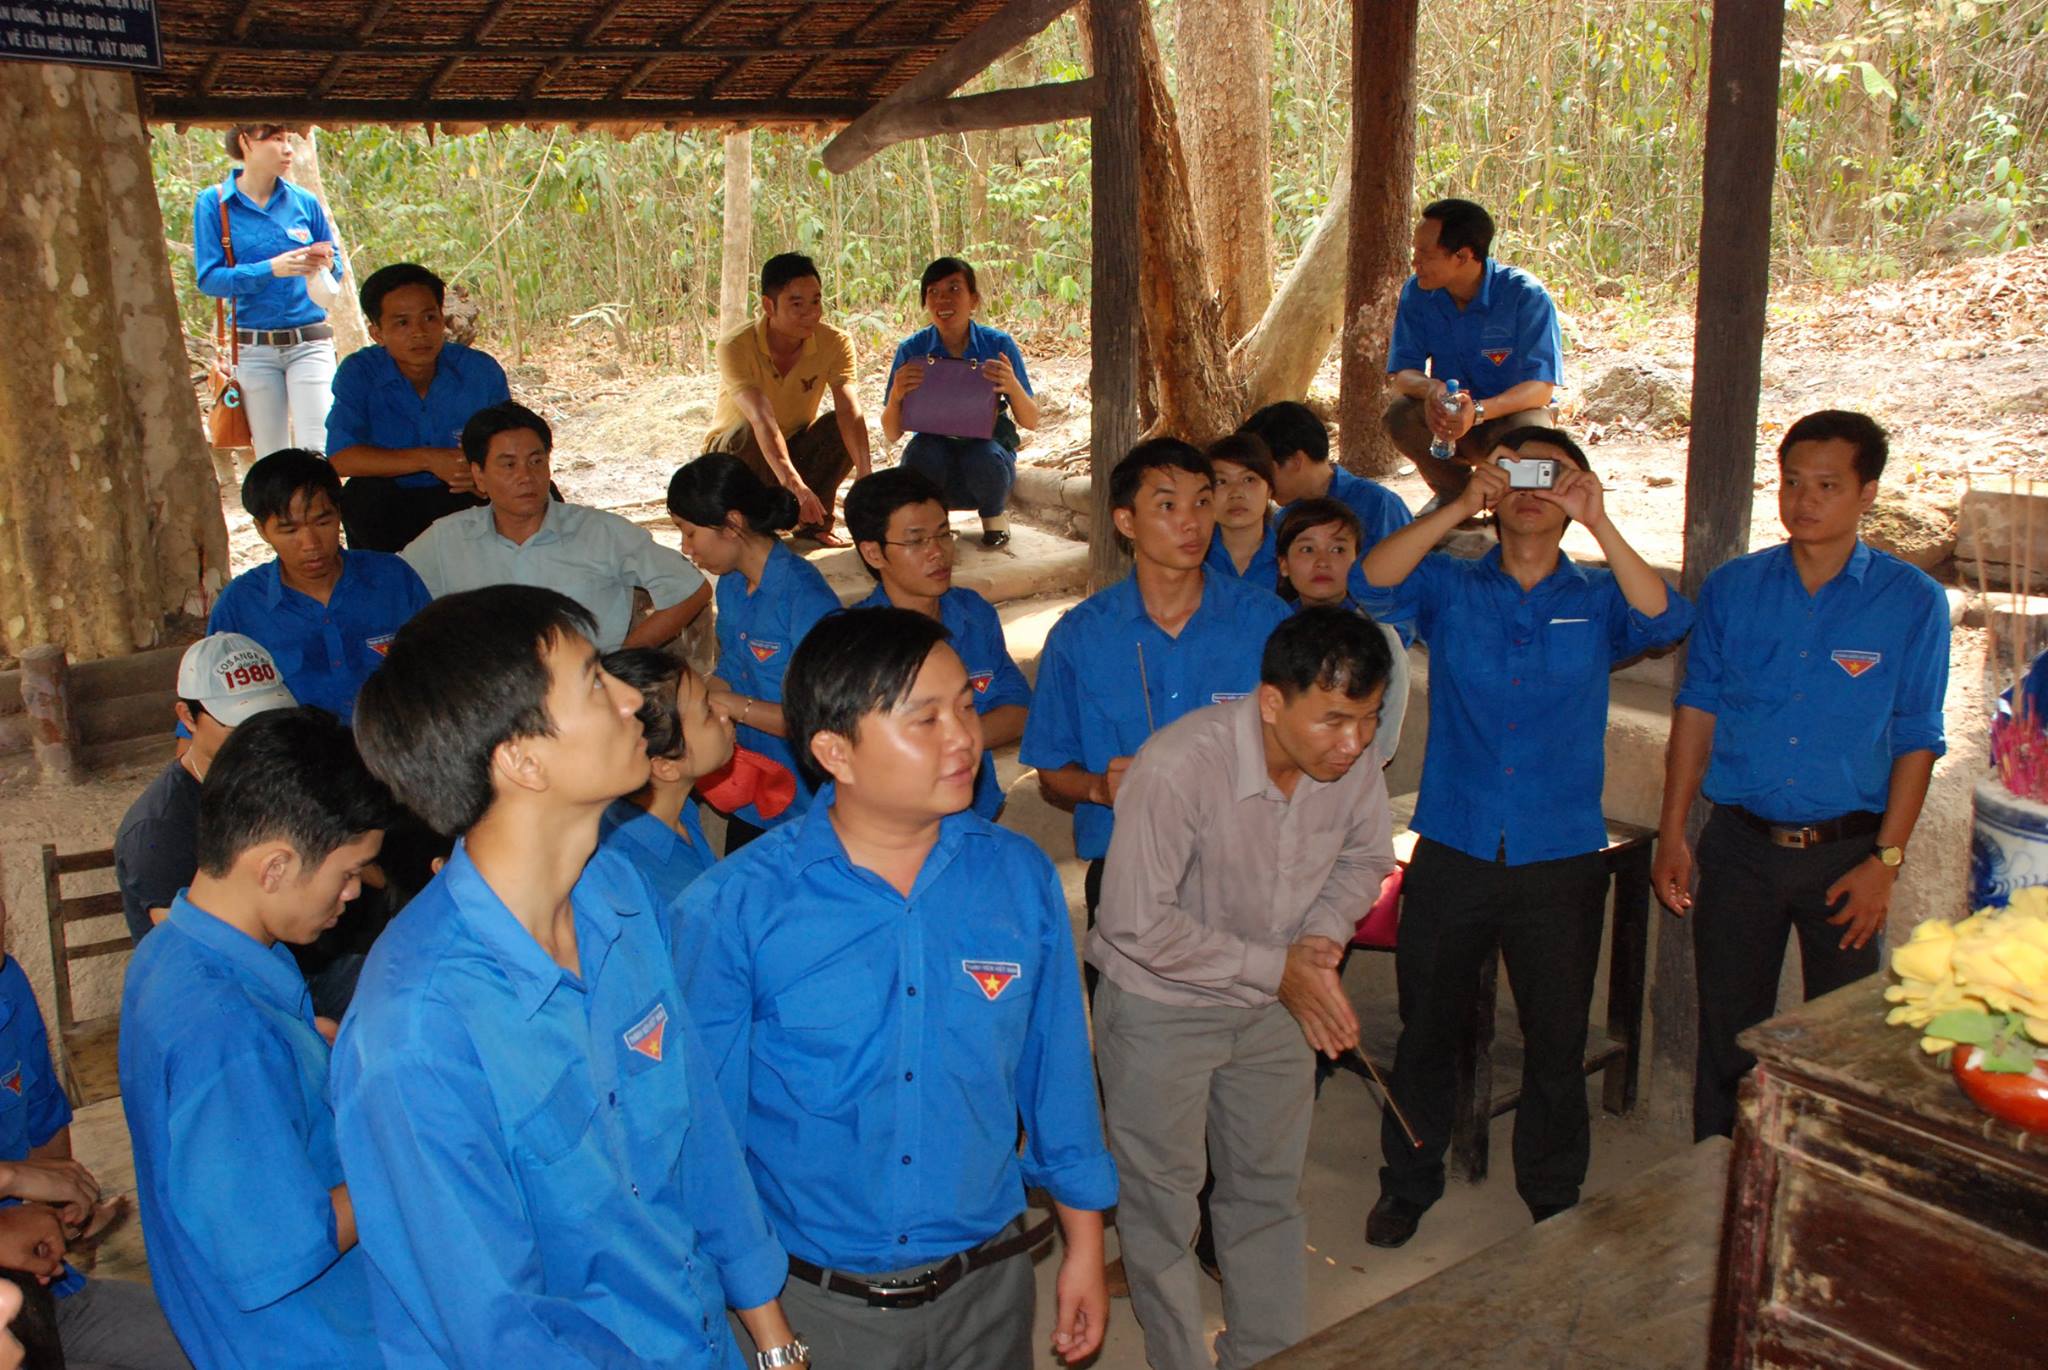 Giao lưu các hoạt động thể thao với Đồn biên phòng Tà Vát tại Biên giới huyện Lộc Ninh tỉnh Bình Phước